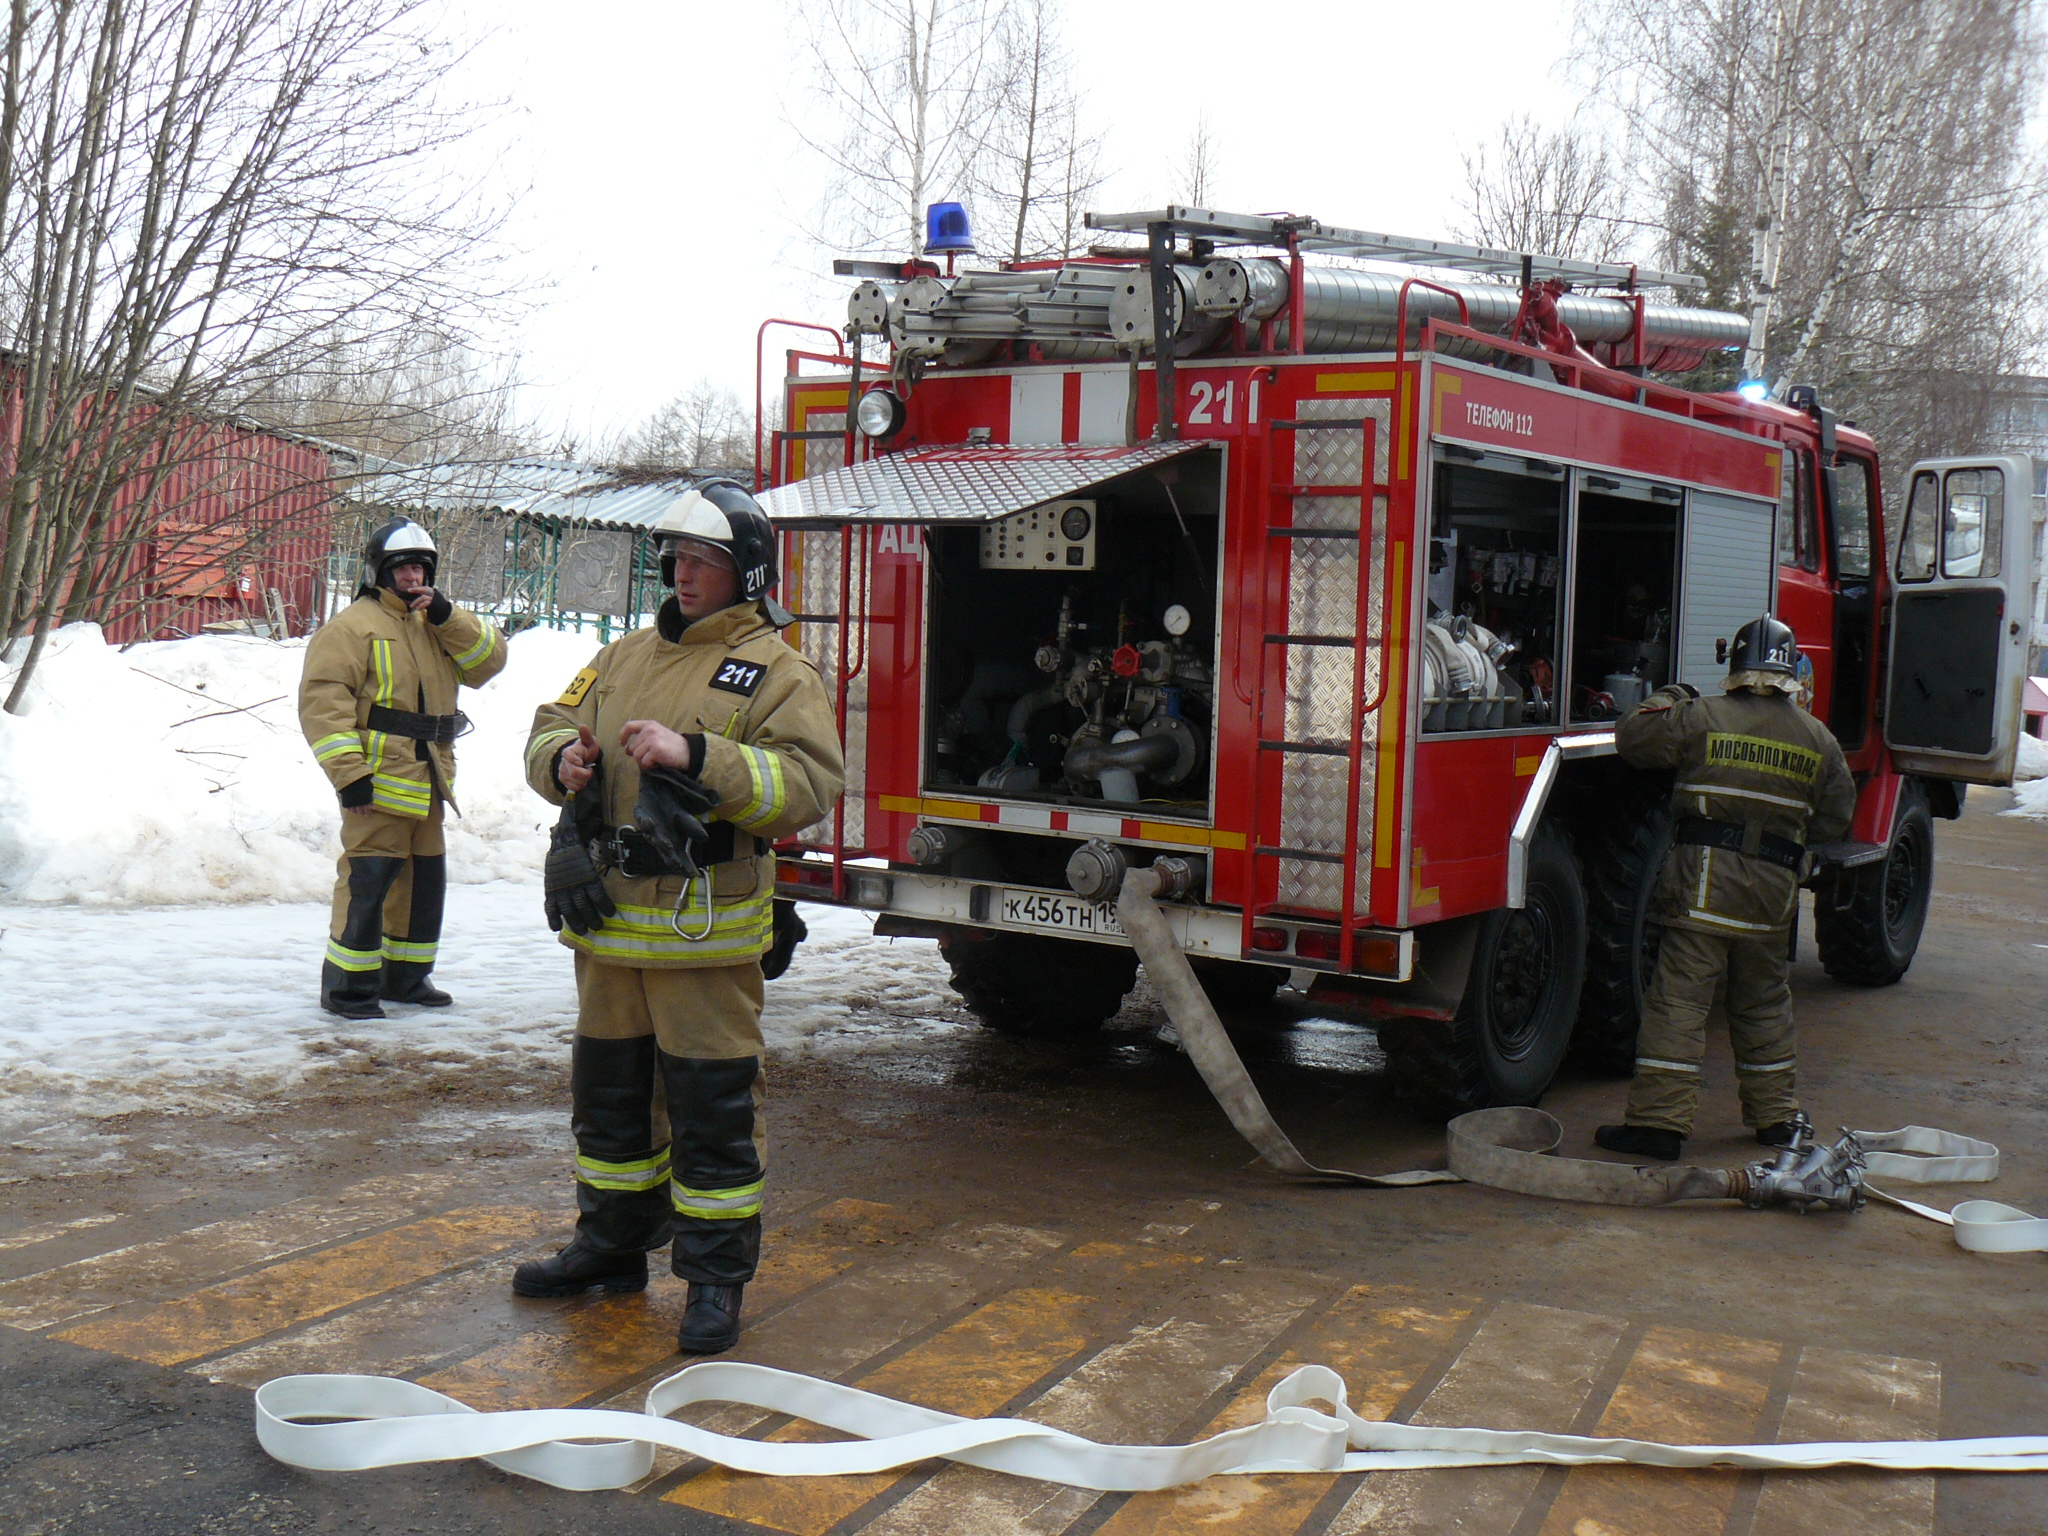 Контрольная работа: Пожары и действия людей в пожарной обстановке